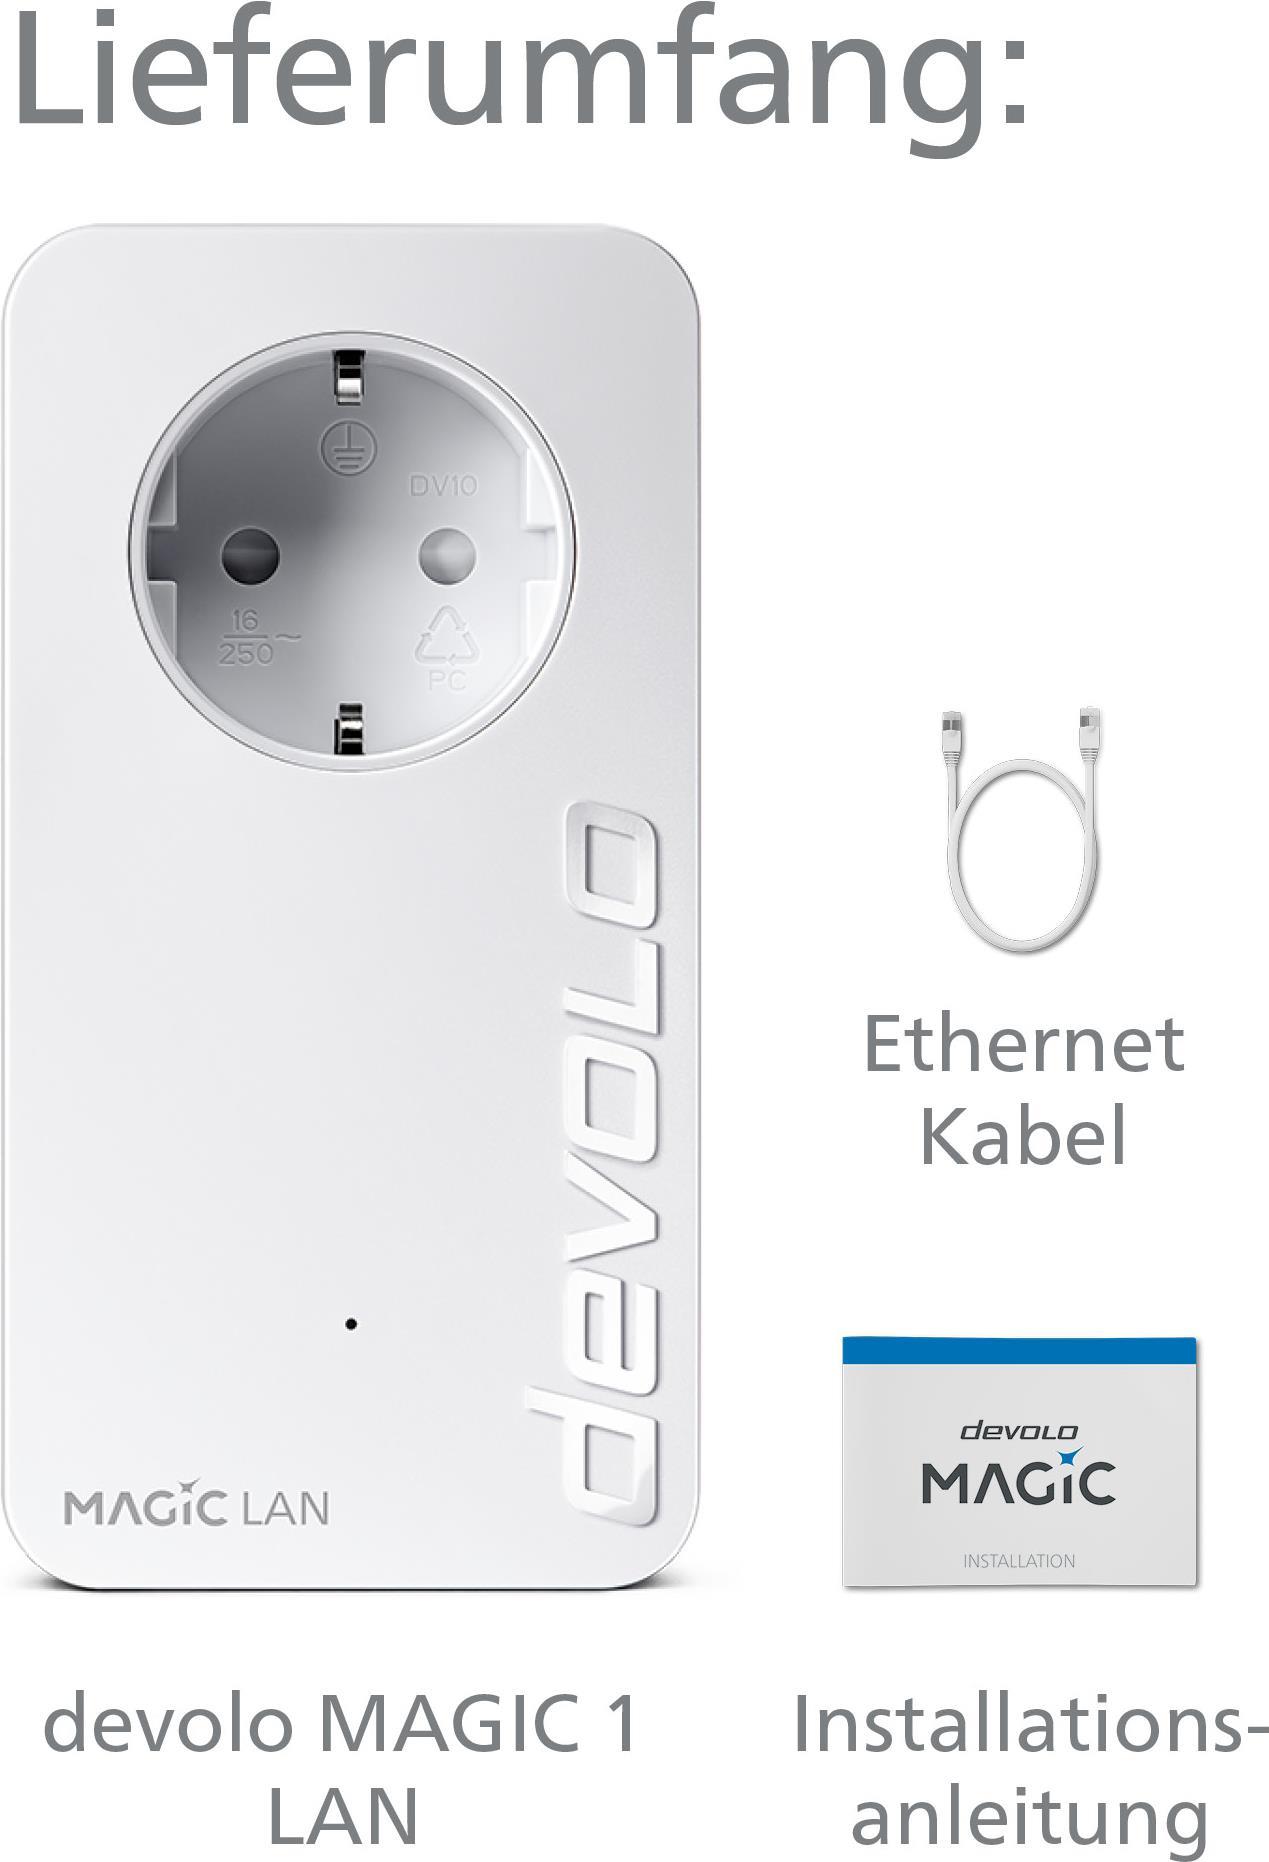 DEVOLO Magic 1 LAN (1200 Mbit/s) günstig & sicher Online einkaufen 